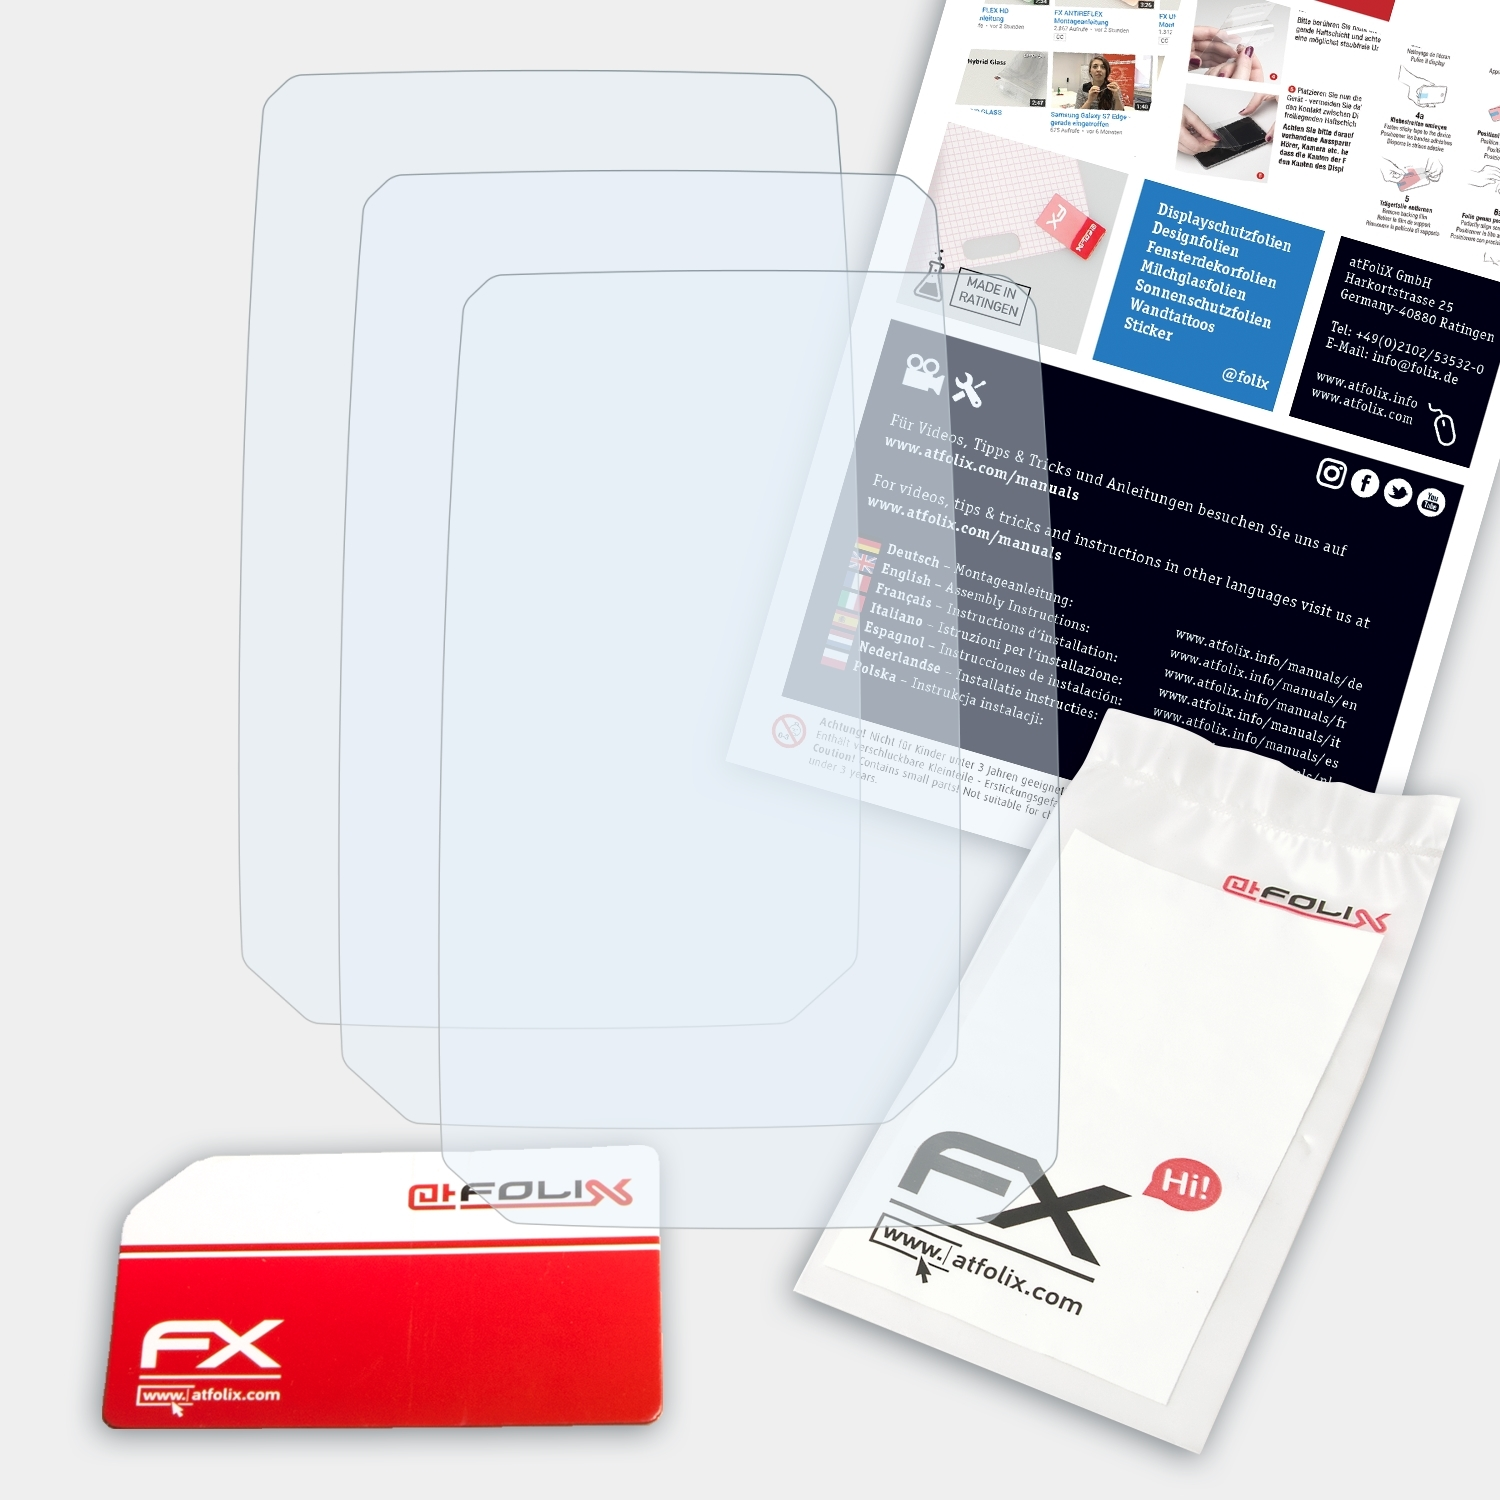 Sigma Displayschutz(für 3x Rox 2.0) FX-Clear ATFOLIX